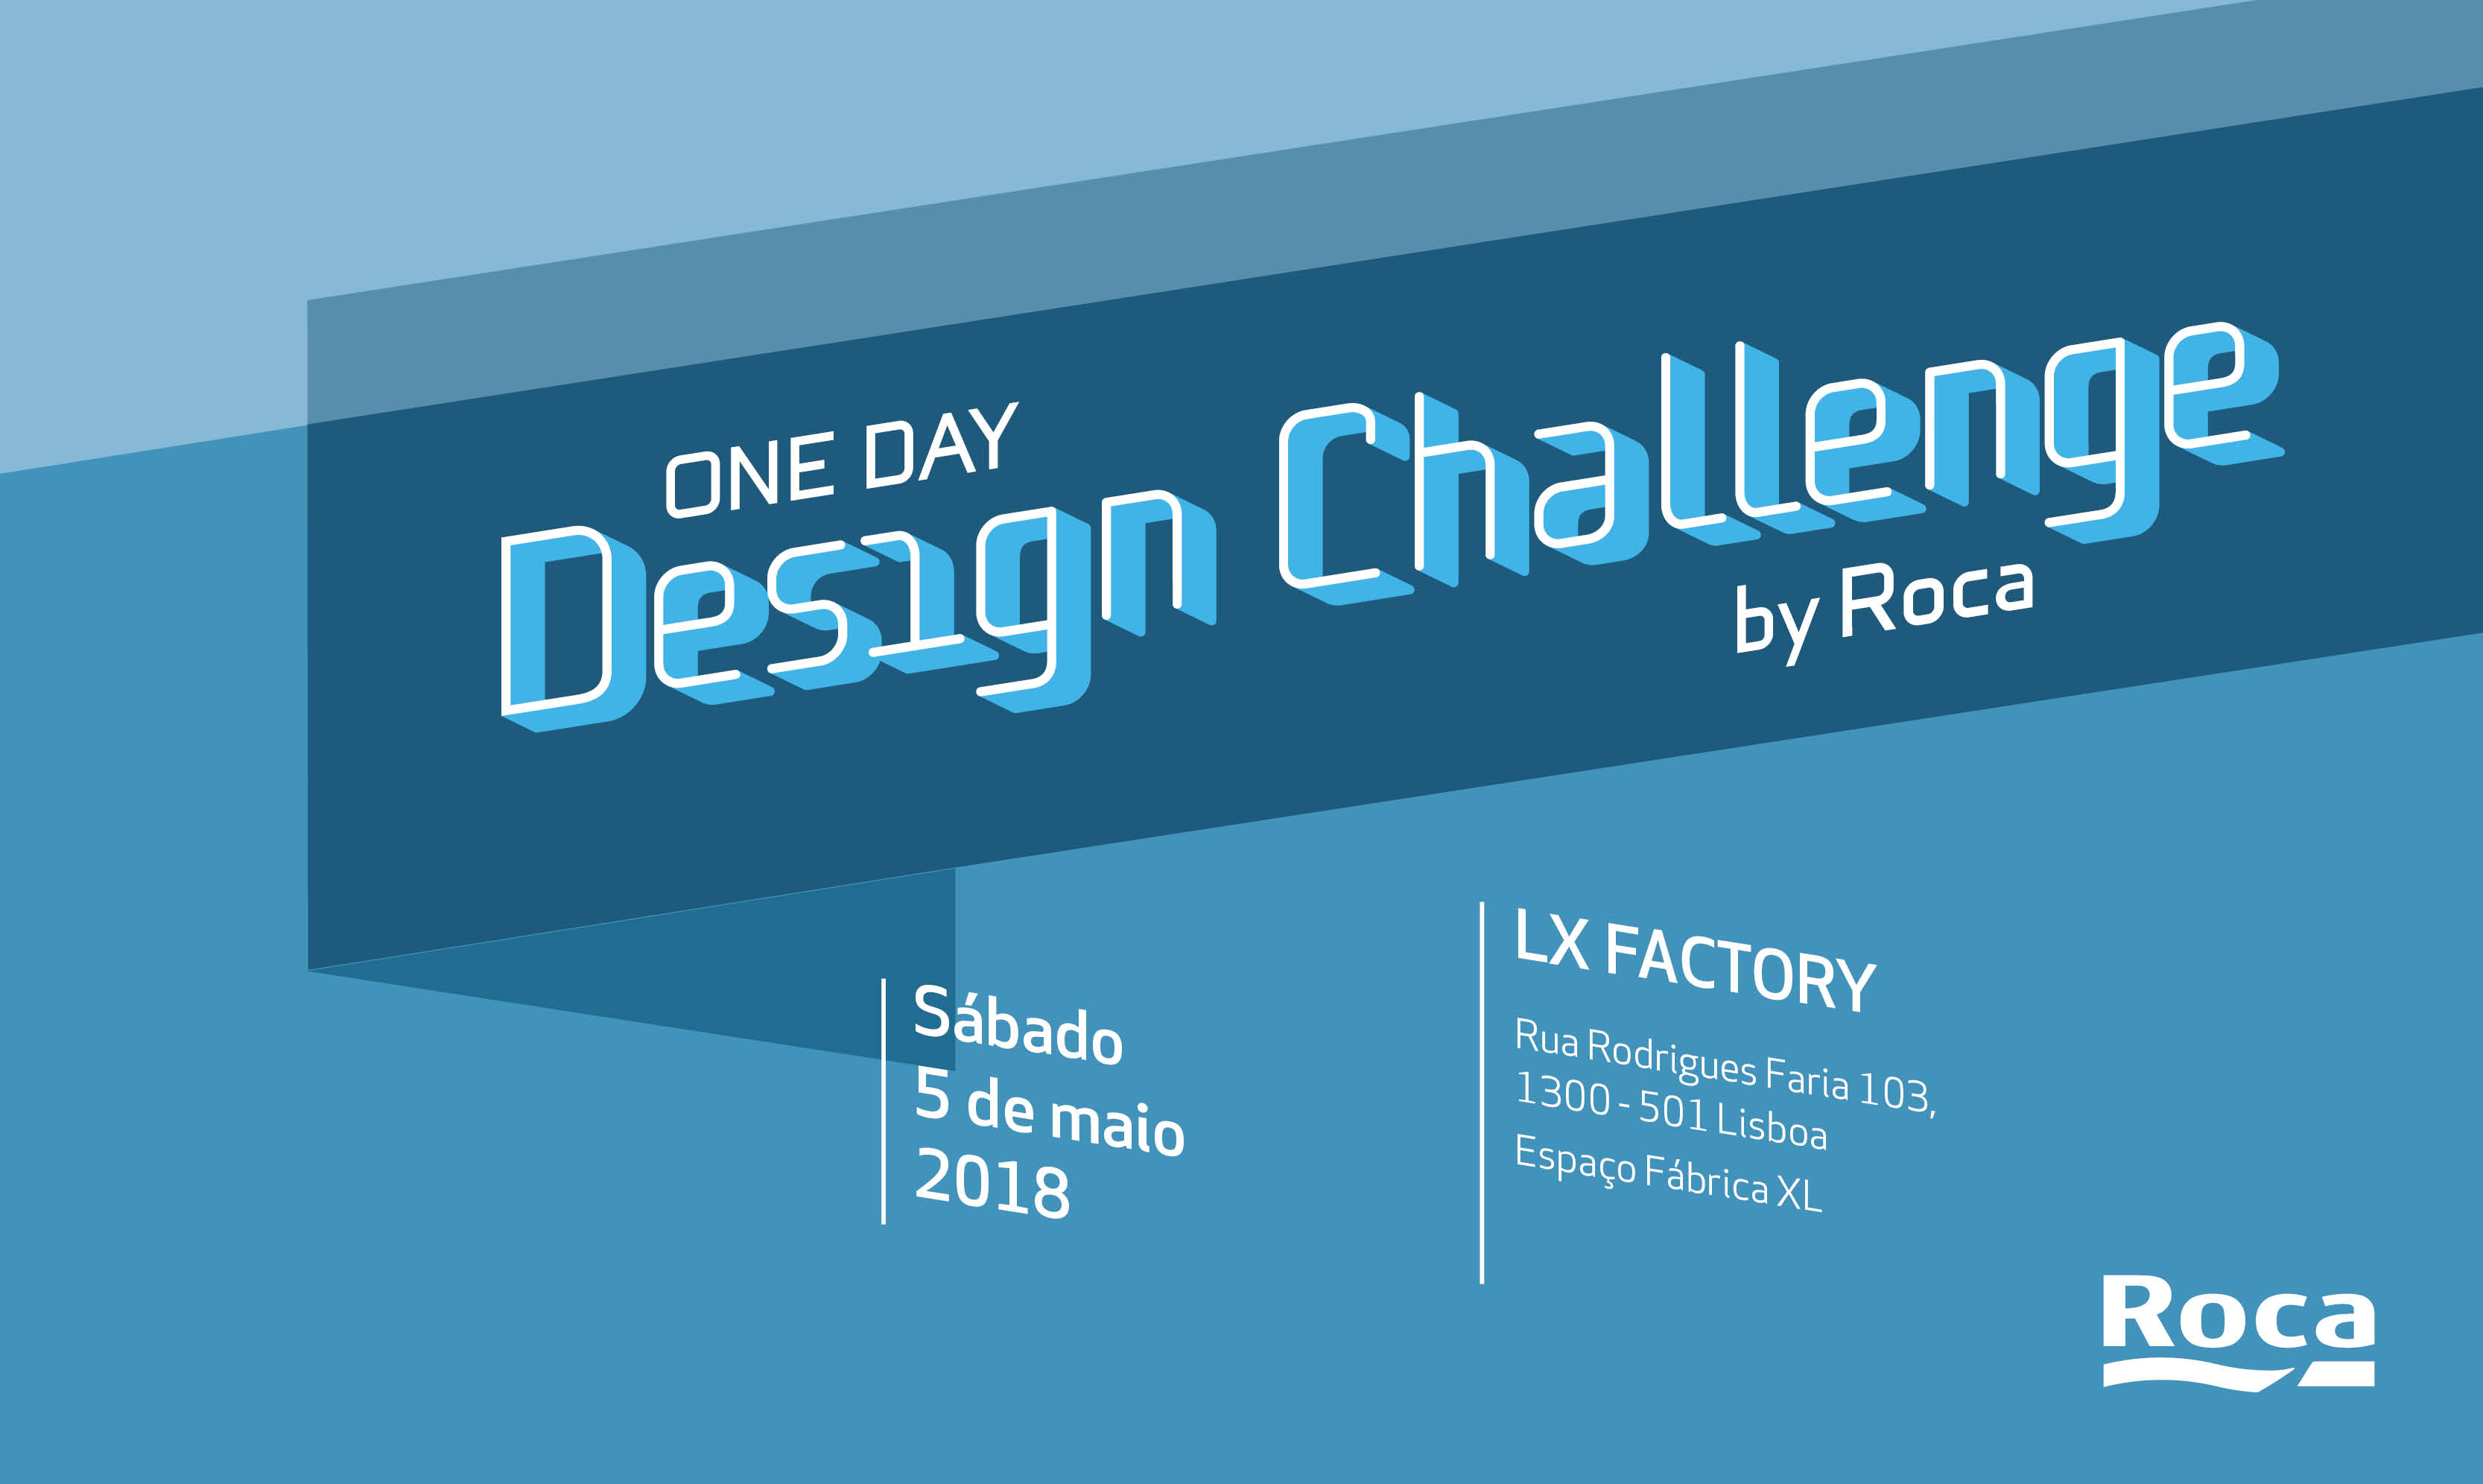 One Day Design Challenge by Roca